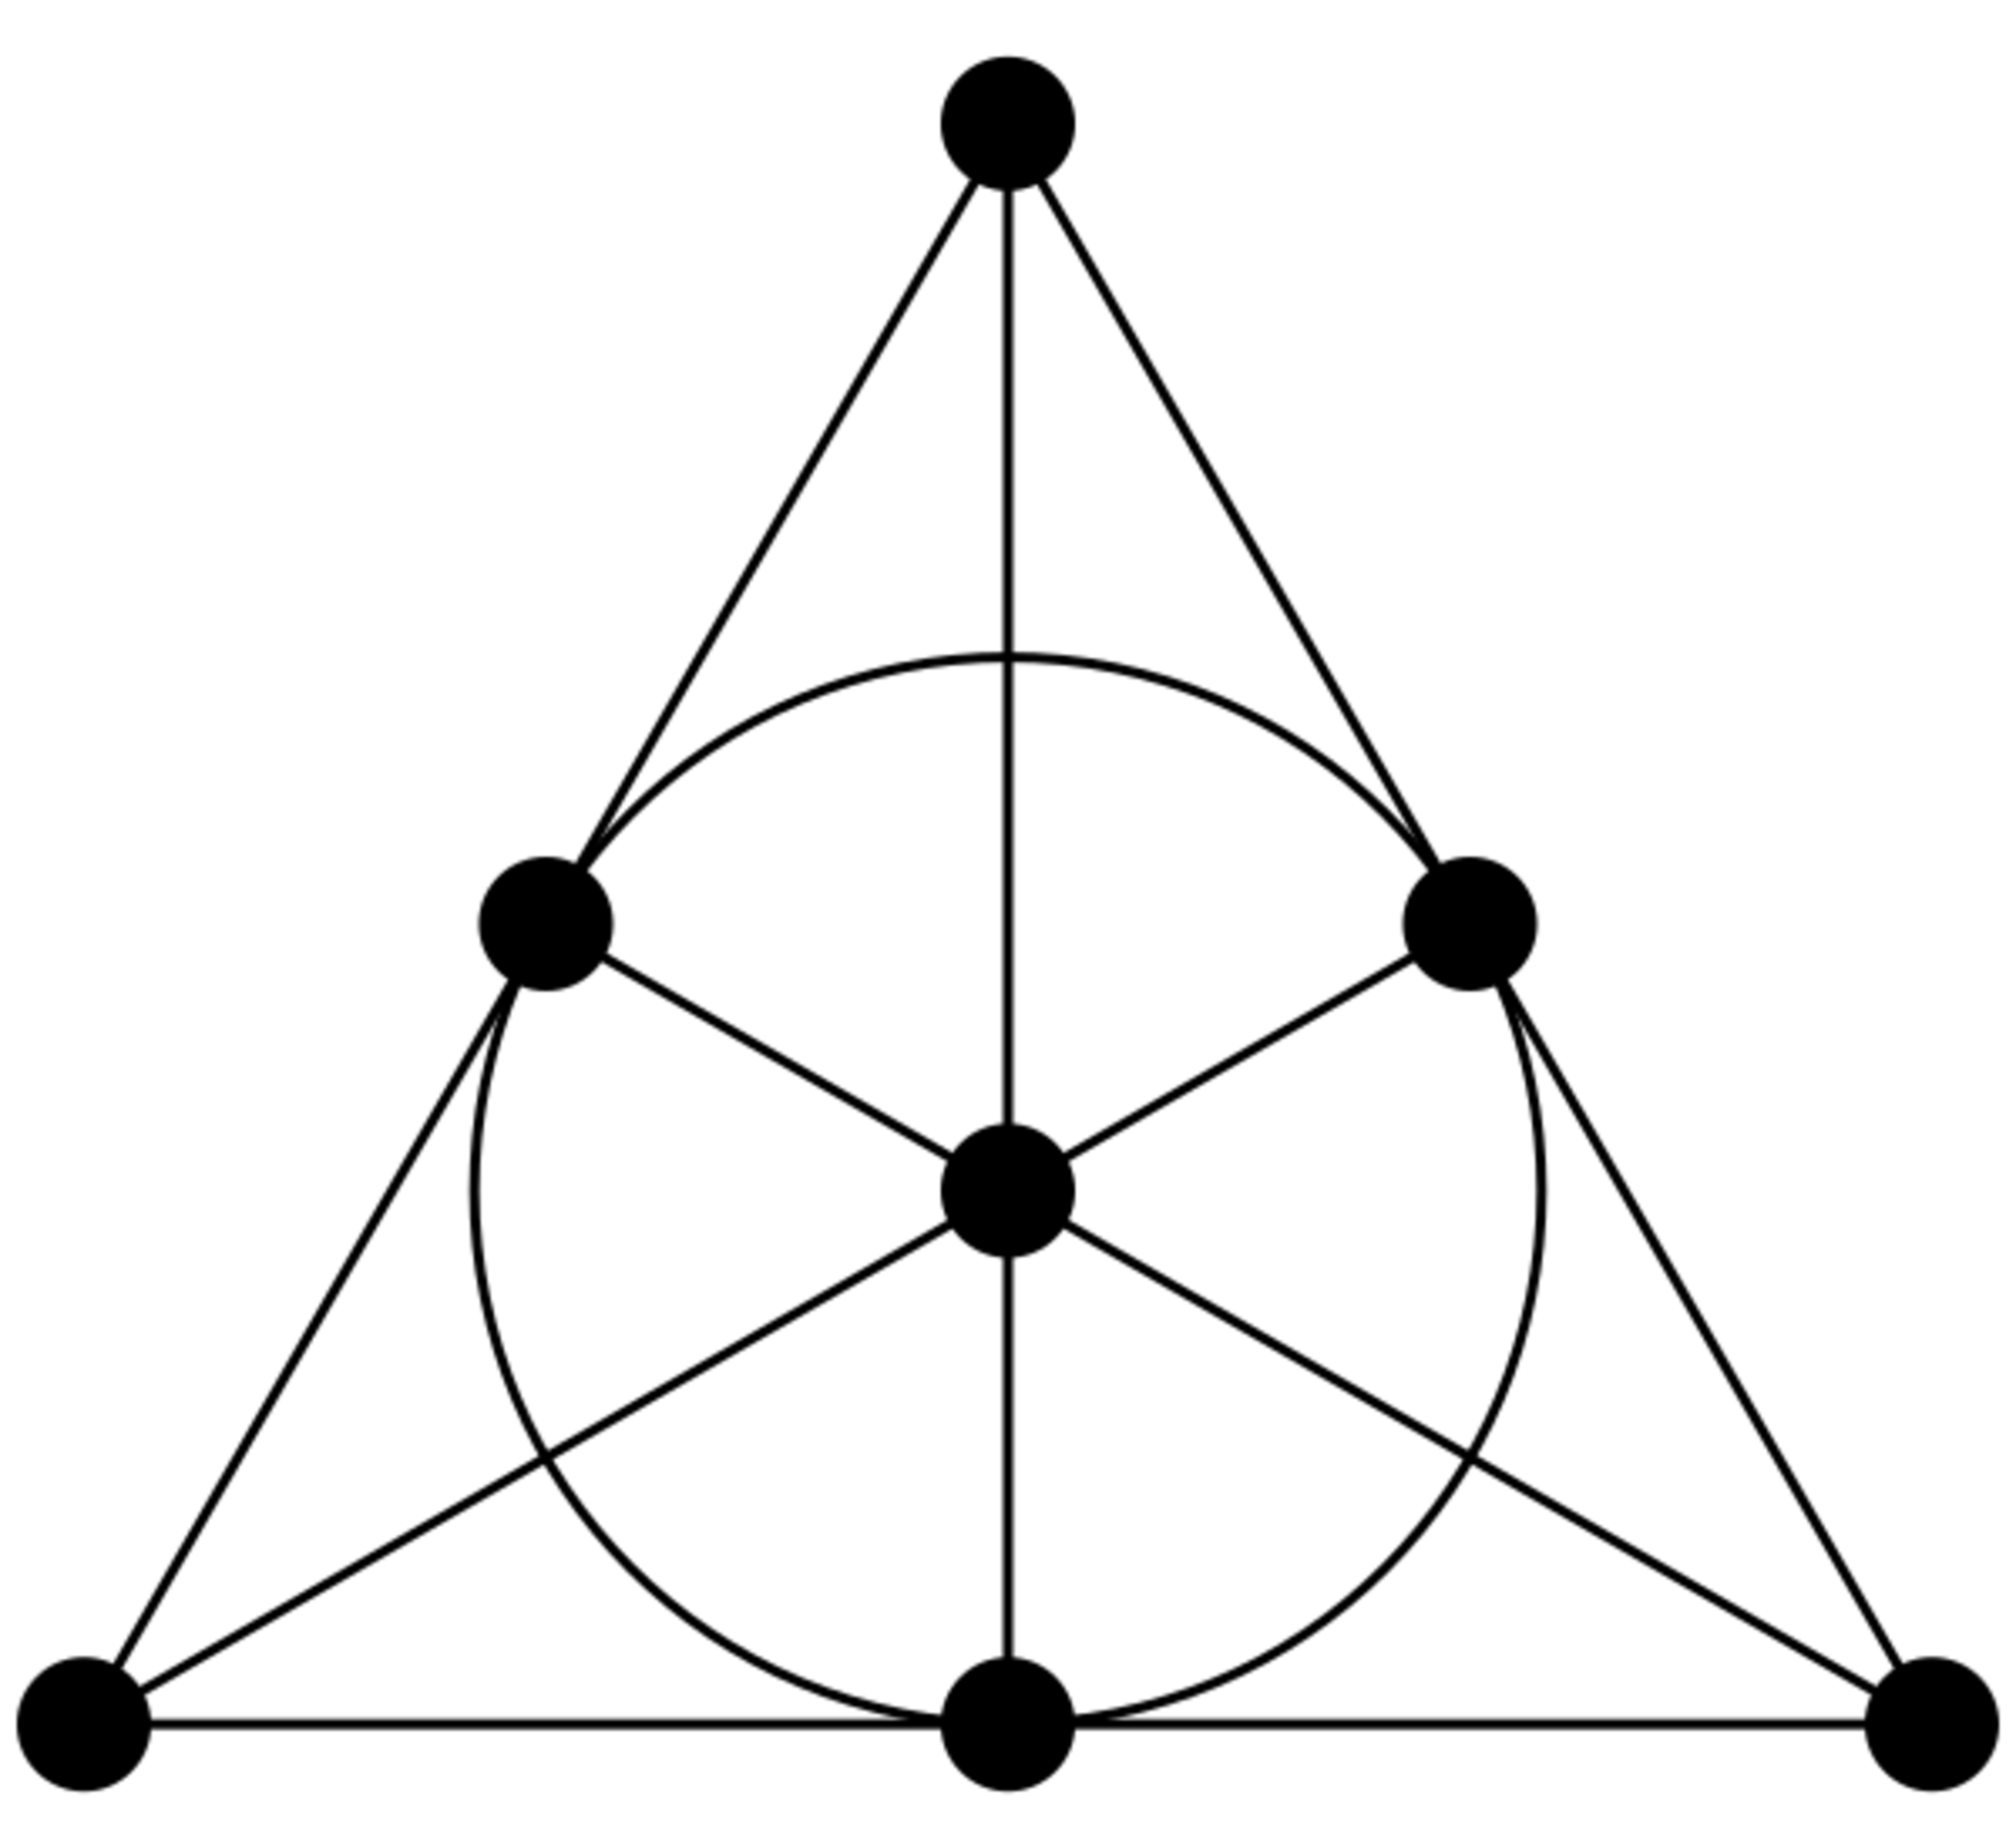 7点と7直線を持つファノ平面の図